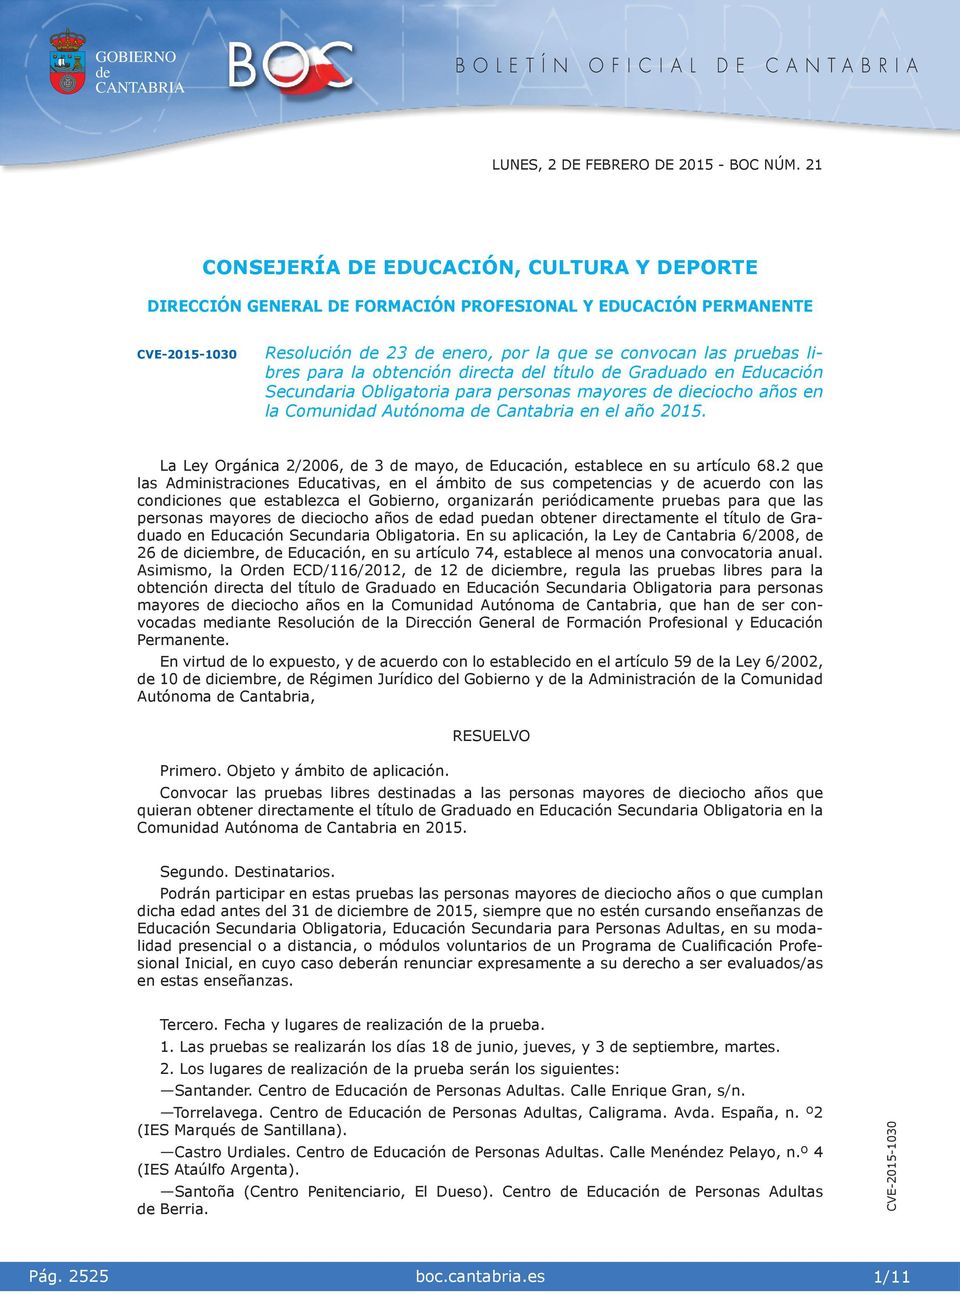 La Ley Orgánca 2/2006, 3 mayo, Educacón, establece en su artículo 68.